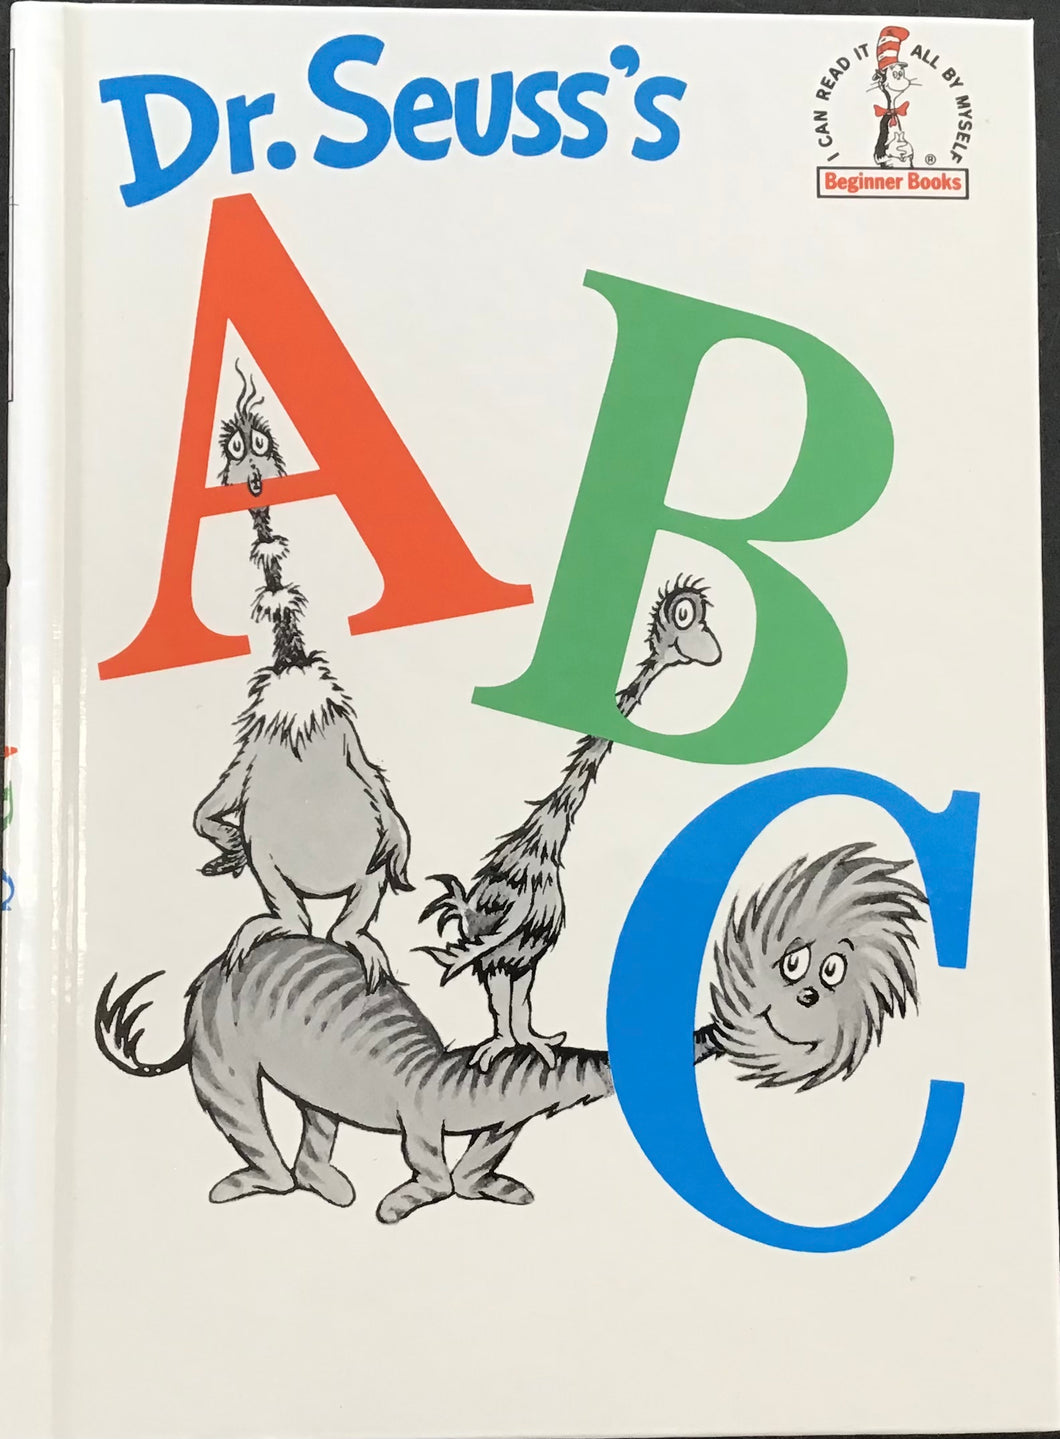 Dr. Seuss’s ABC